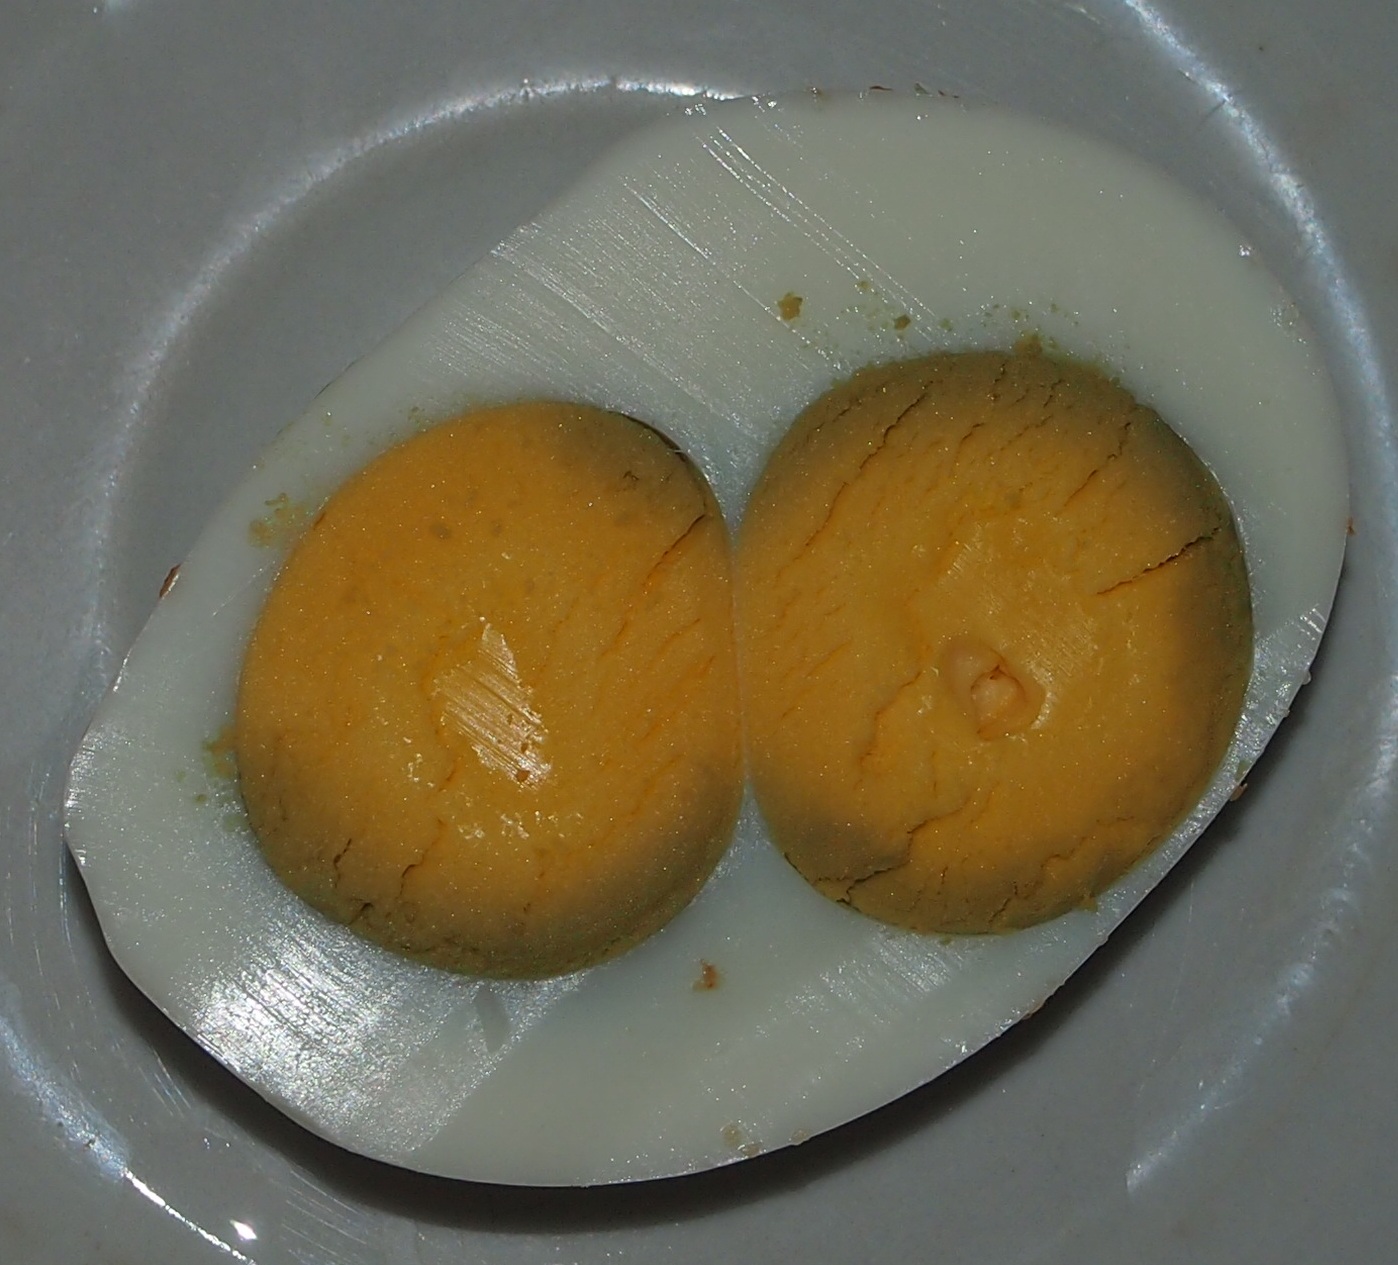 Double yolk